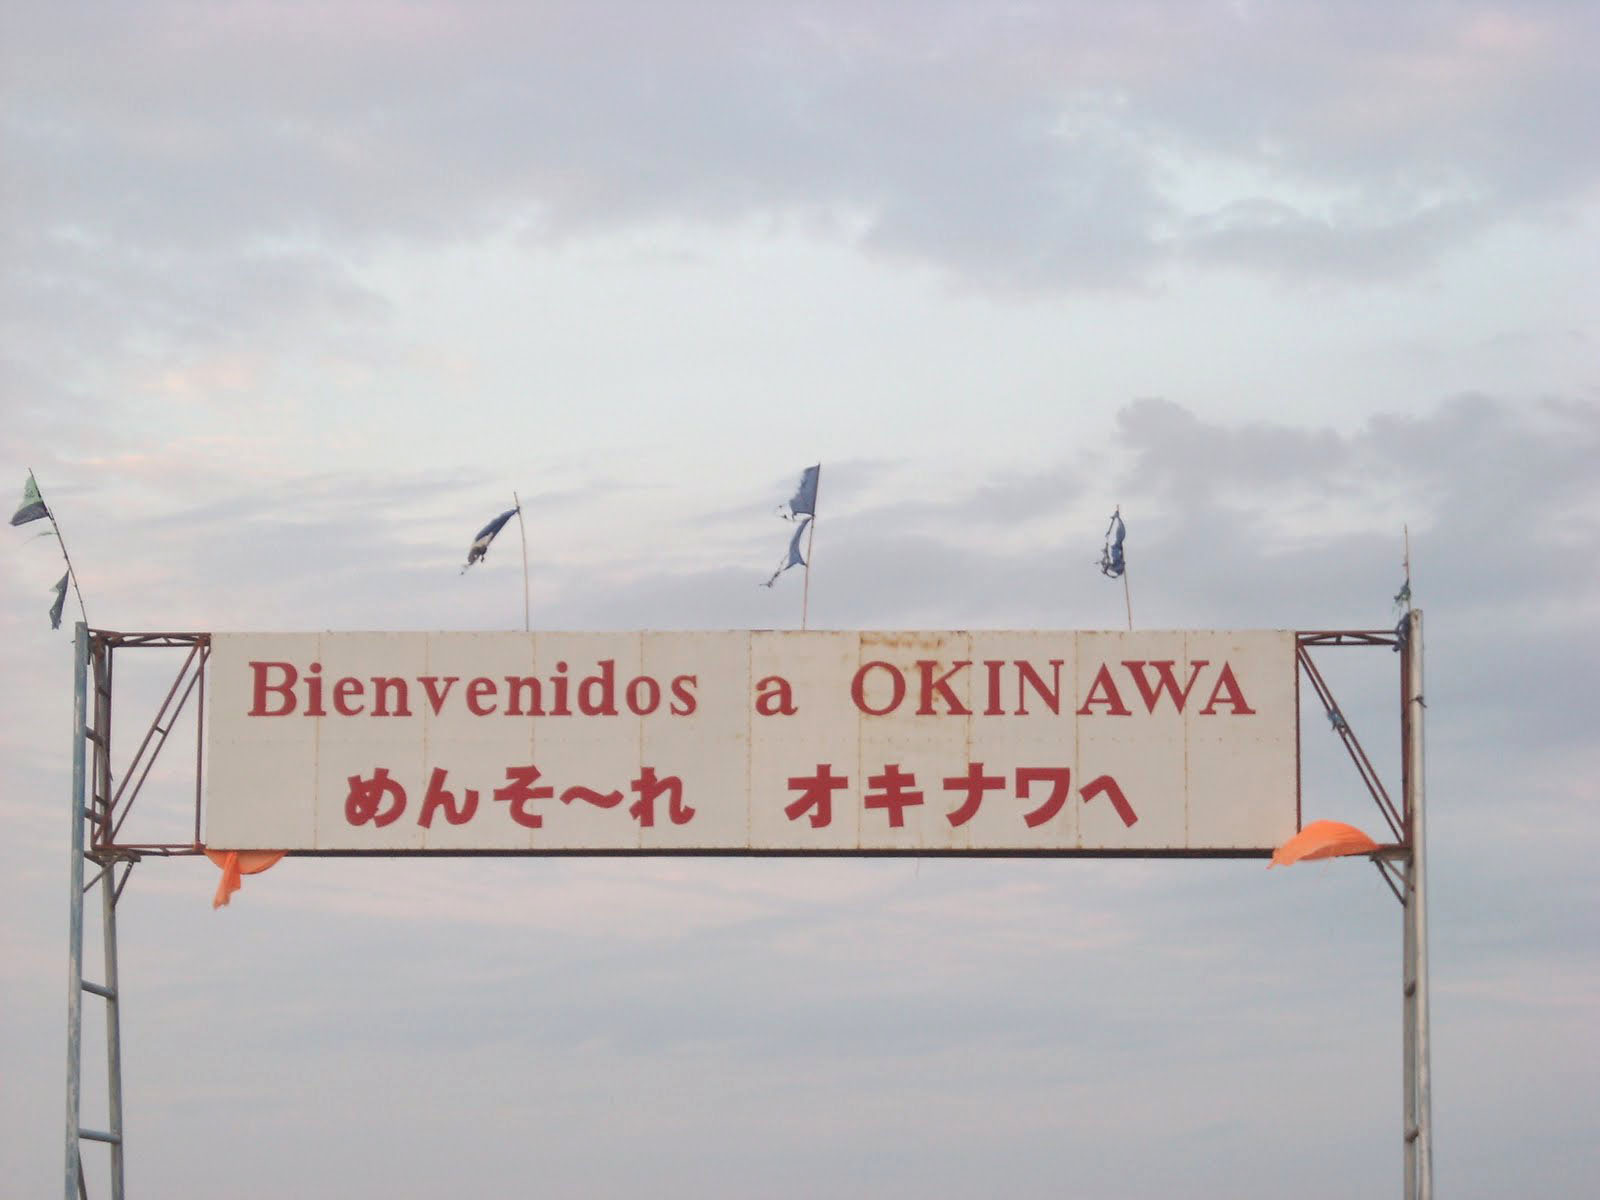 オキナワ移住地 Wikipedia